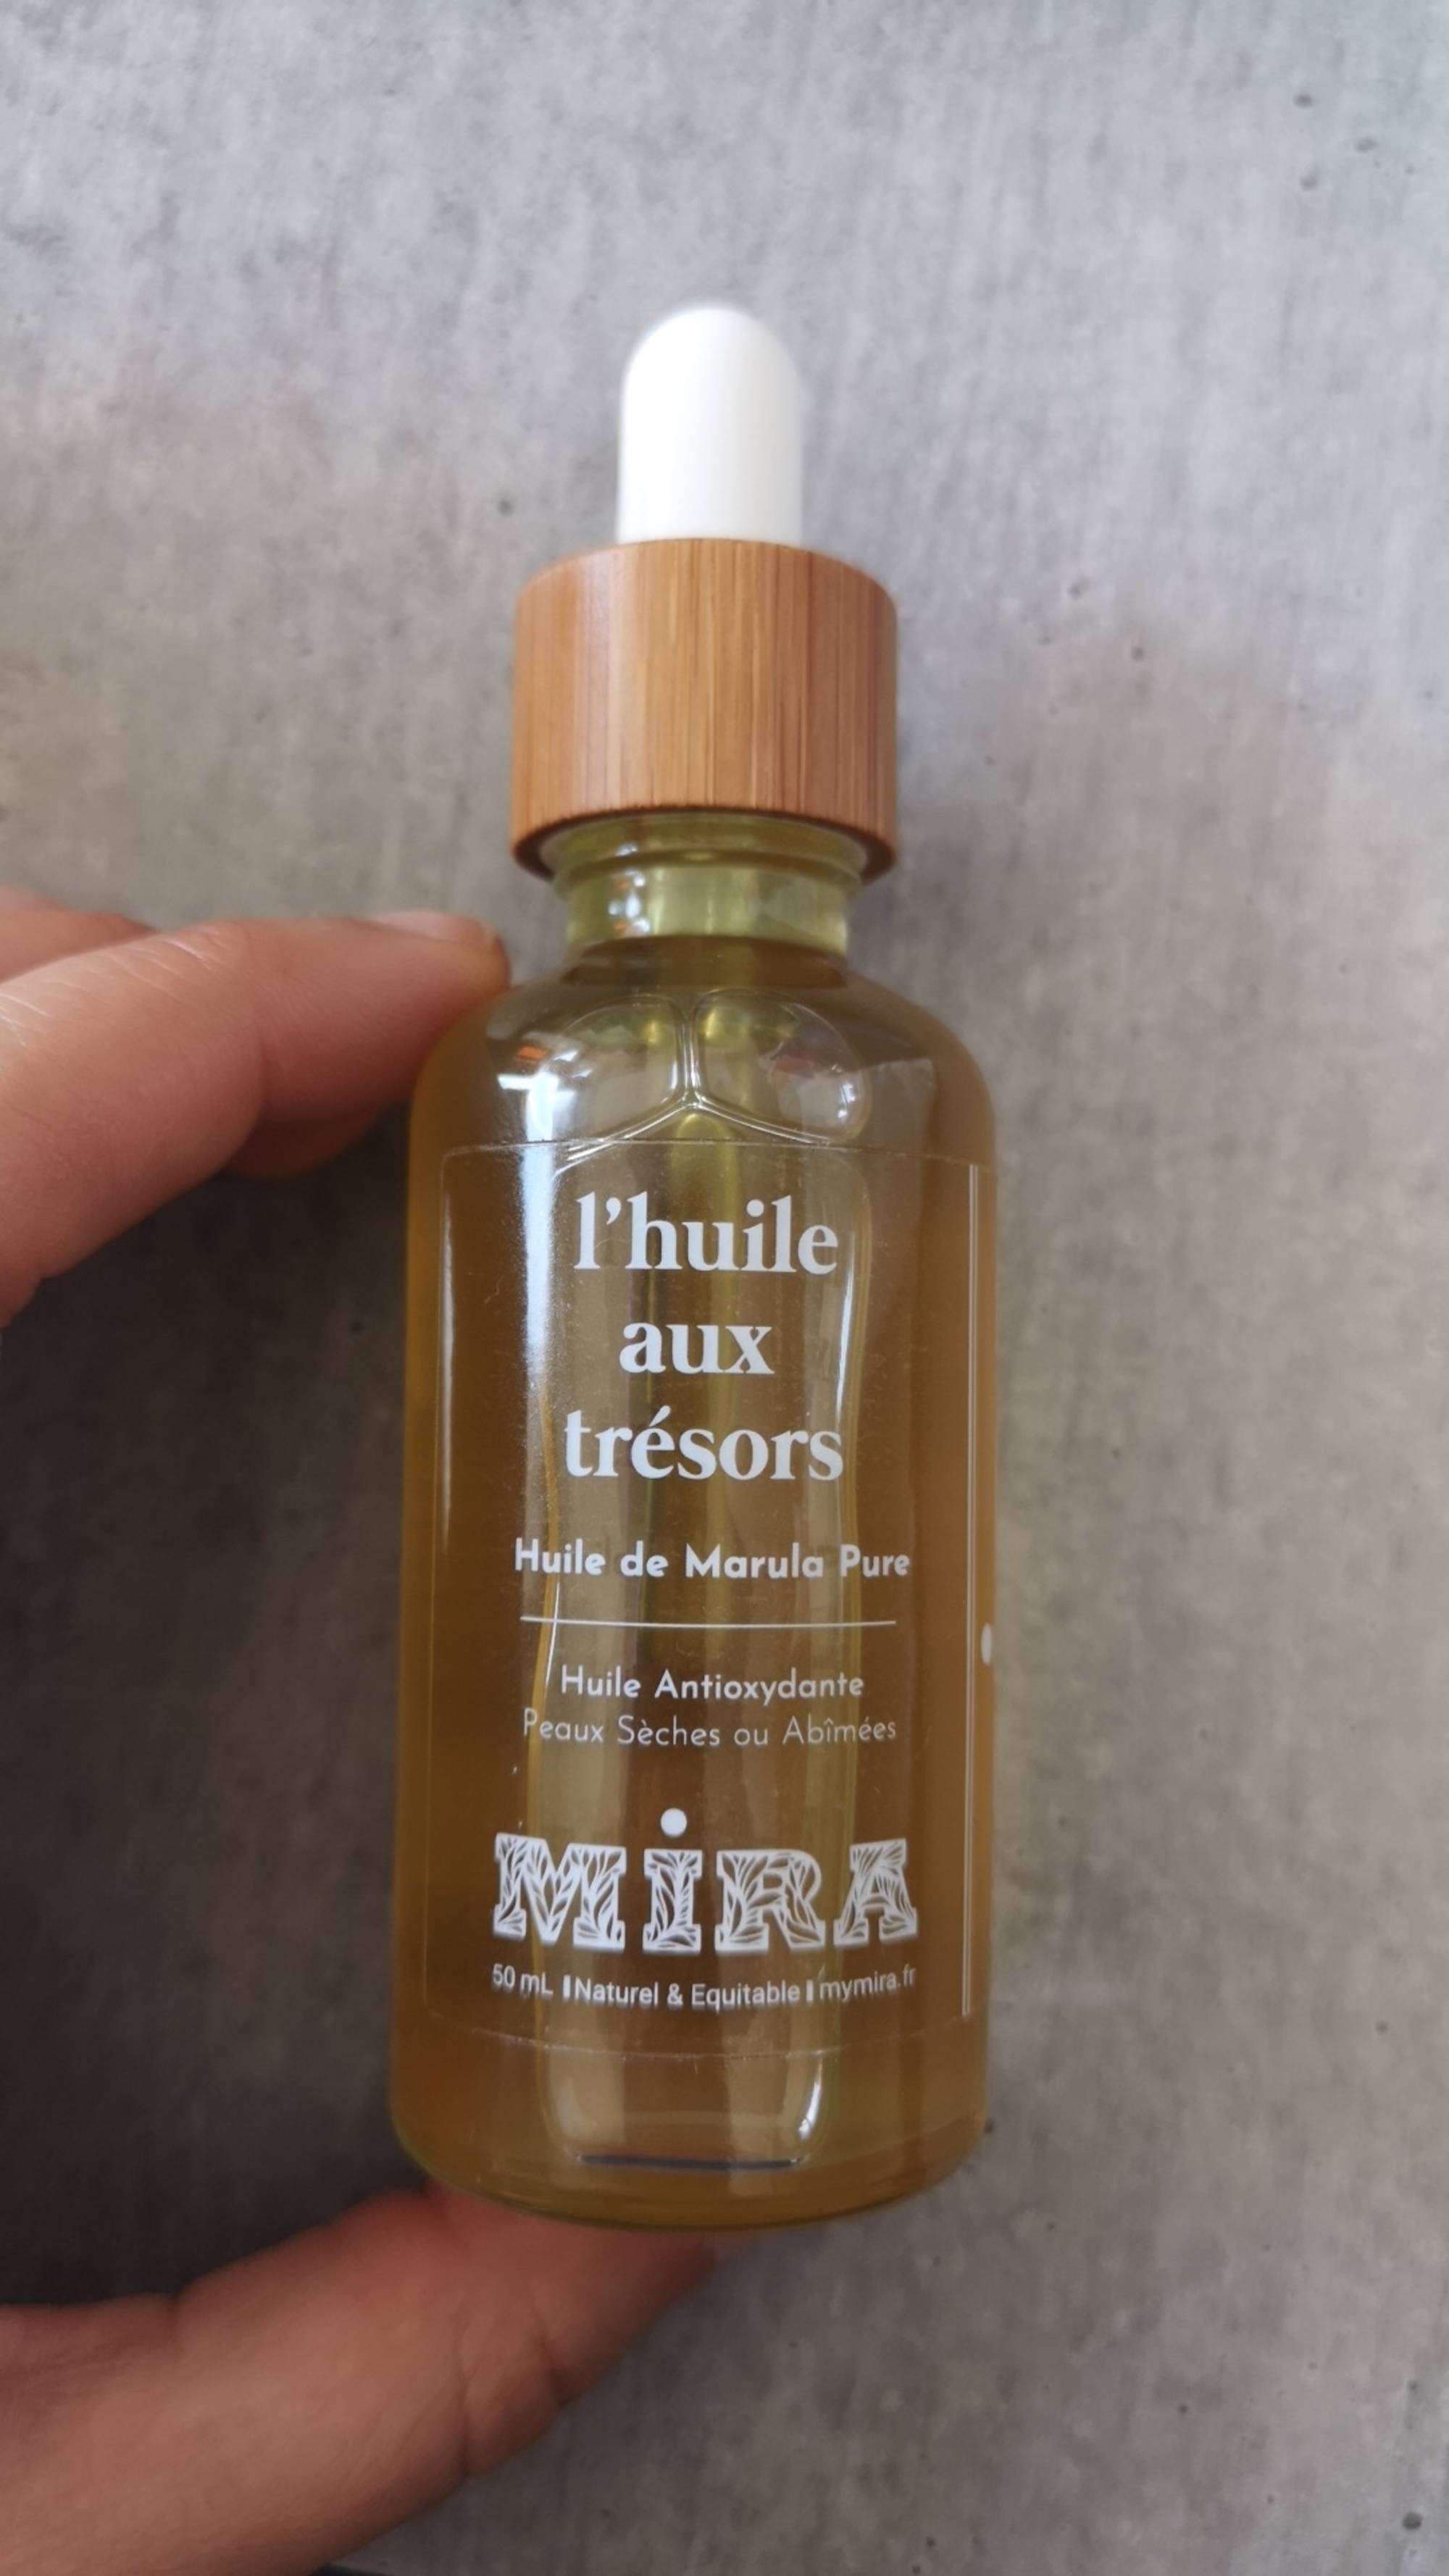 MIRA - L'huile aux trésors - Huile de Marula pure